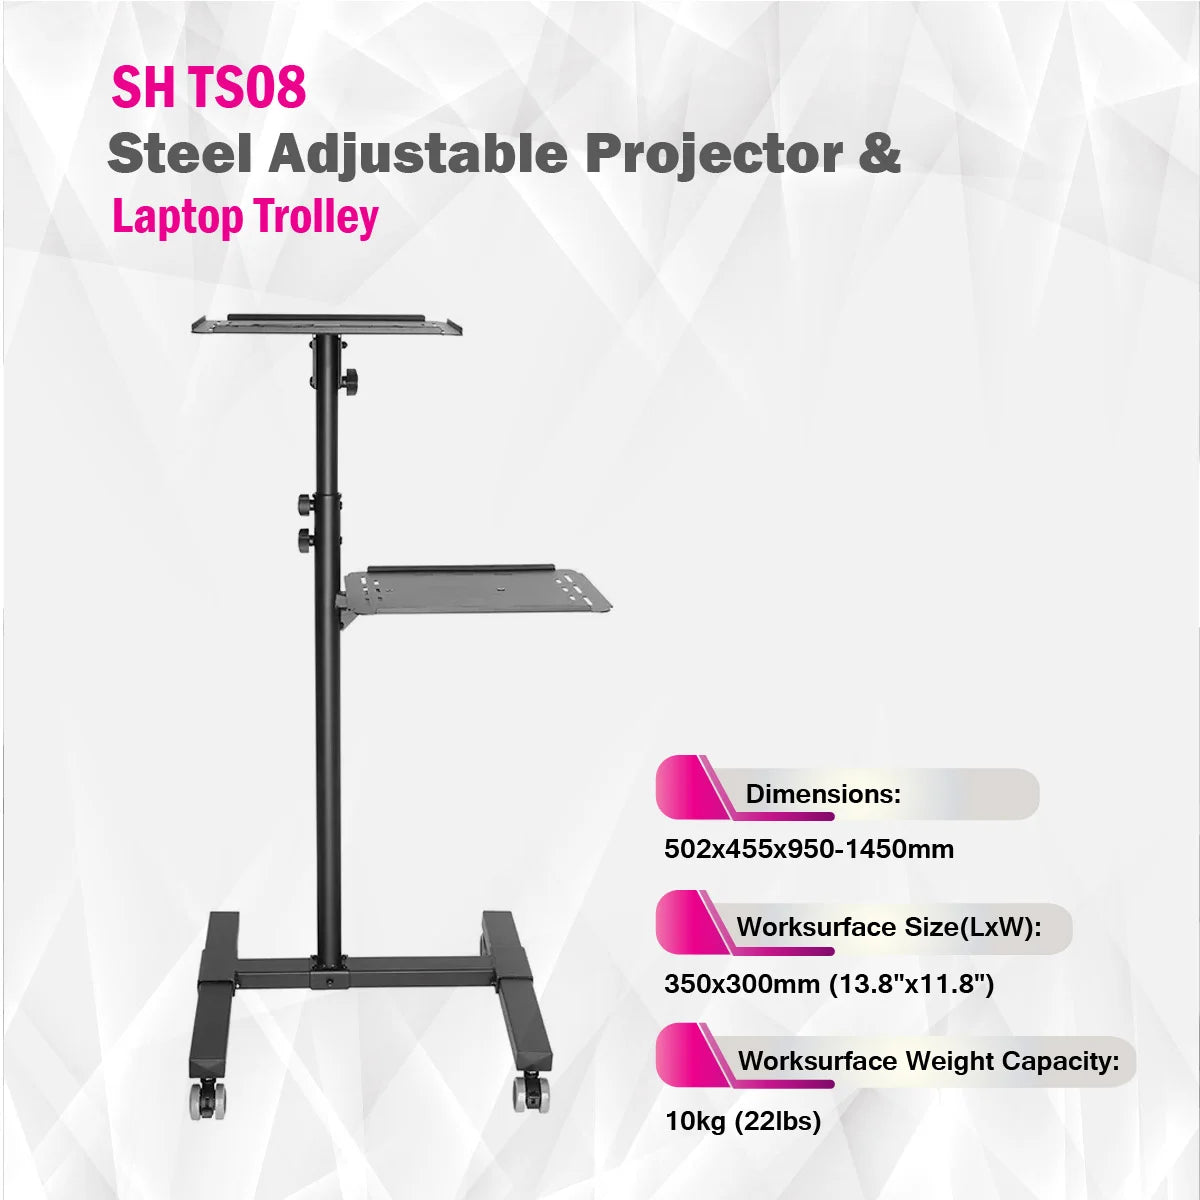 SkillTech - SH TS08 - Steel Adjustable Projector & Laptop Trolley